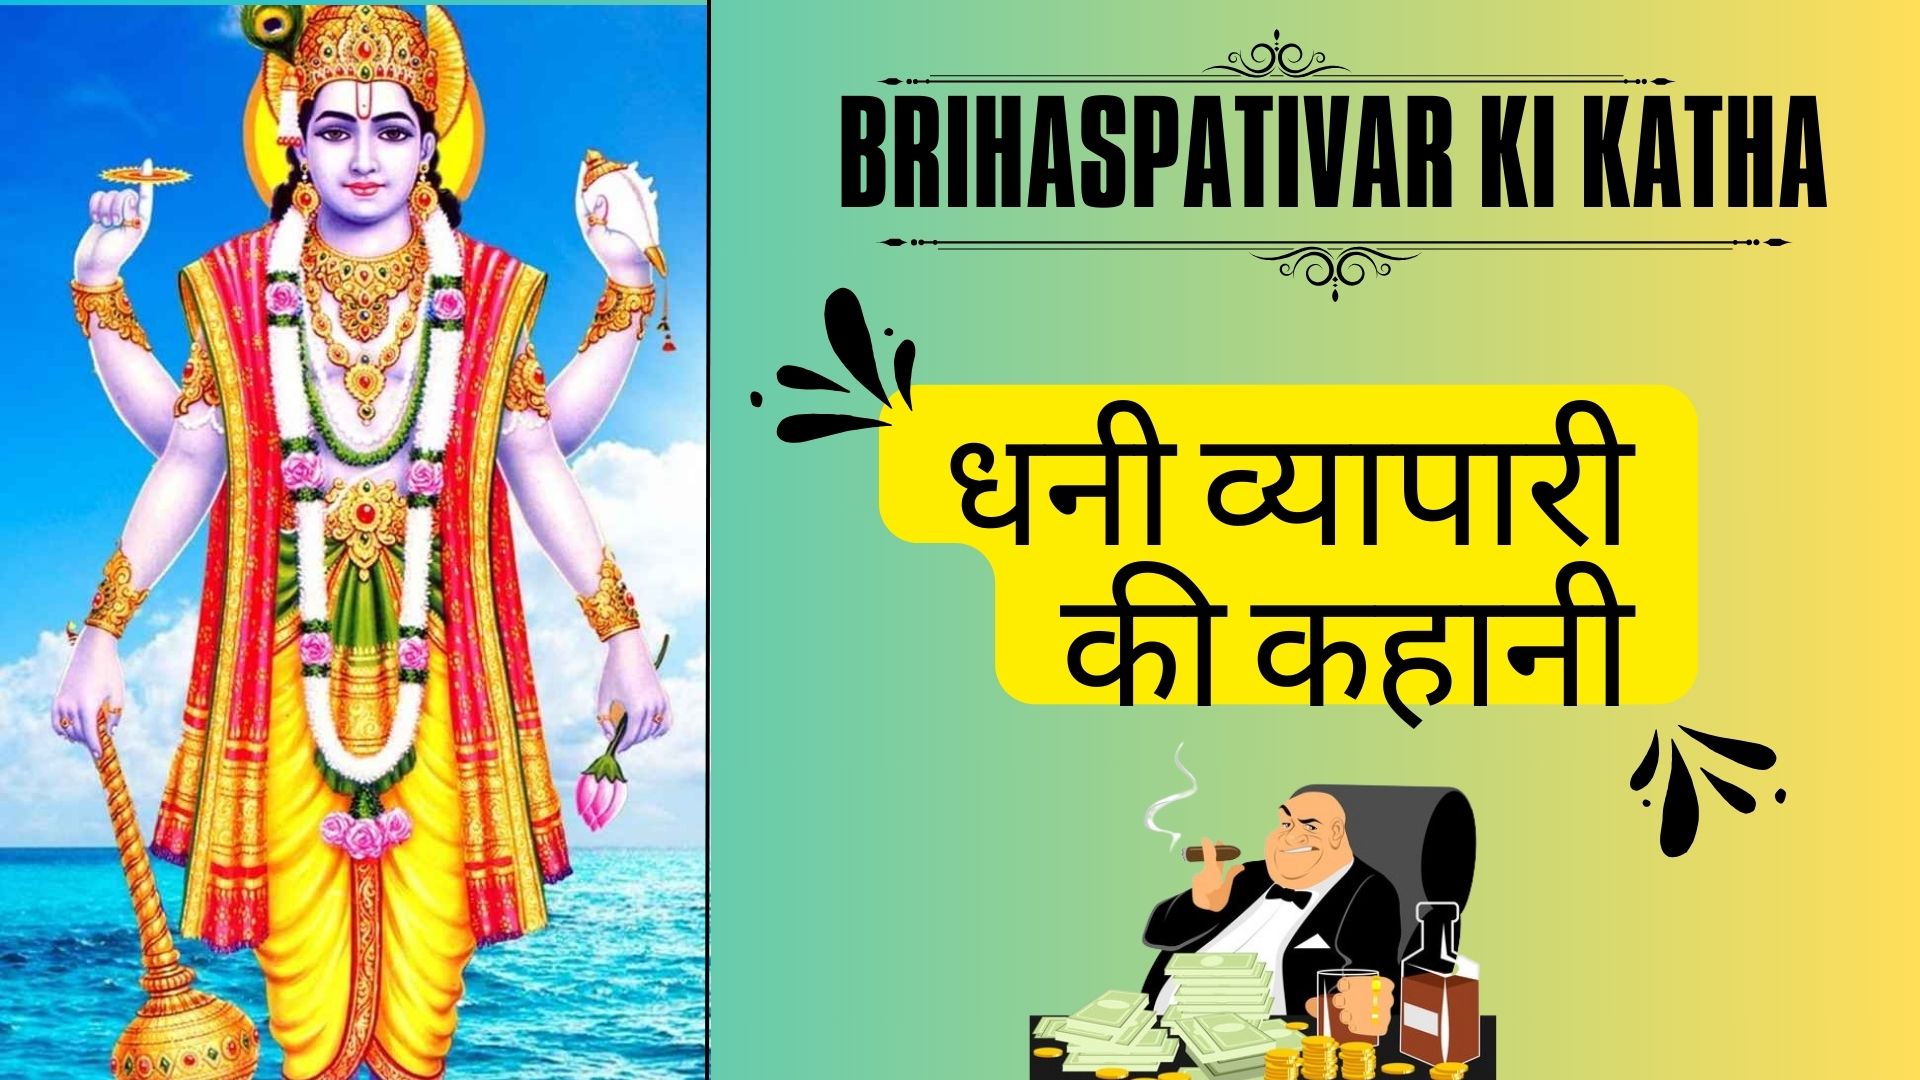 Brihaspativar Ki Katha - धनी व्यापारी की कहानी